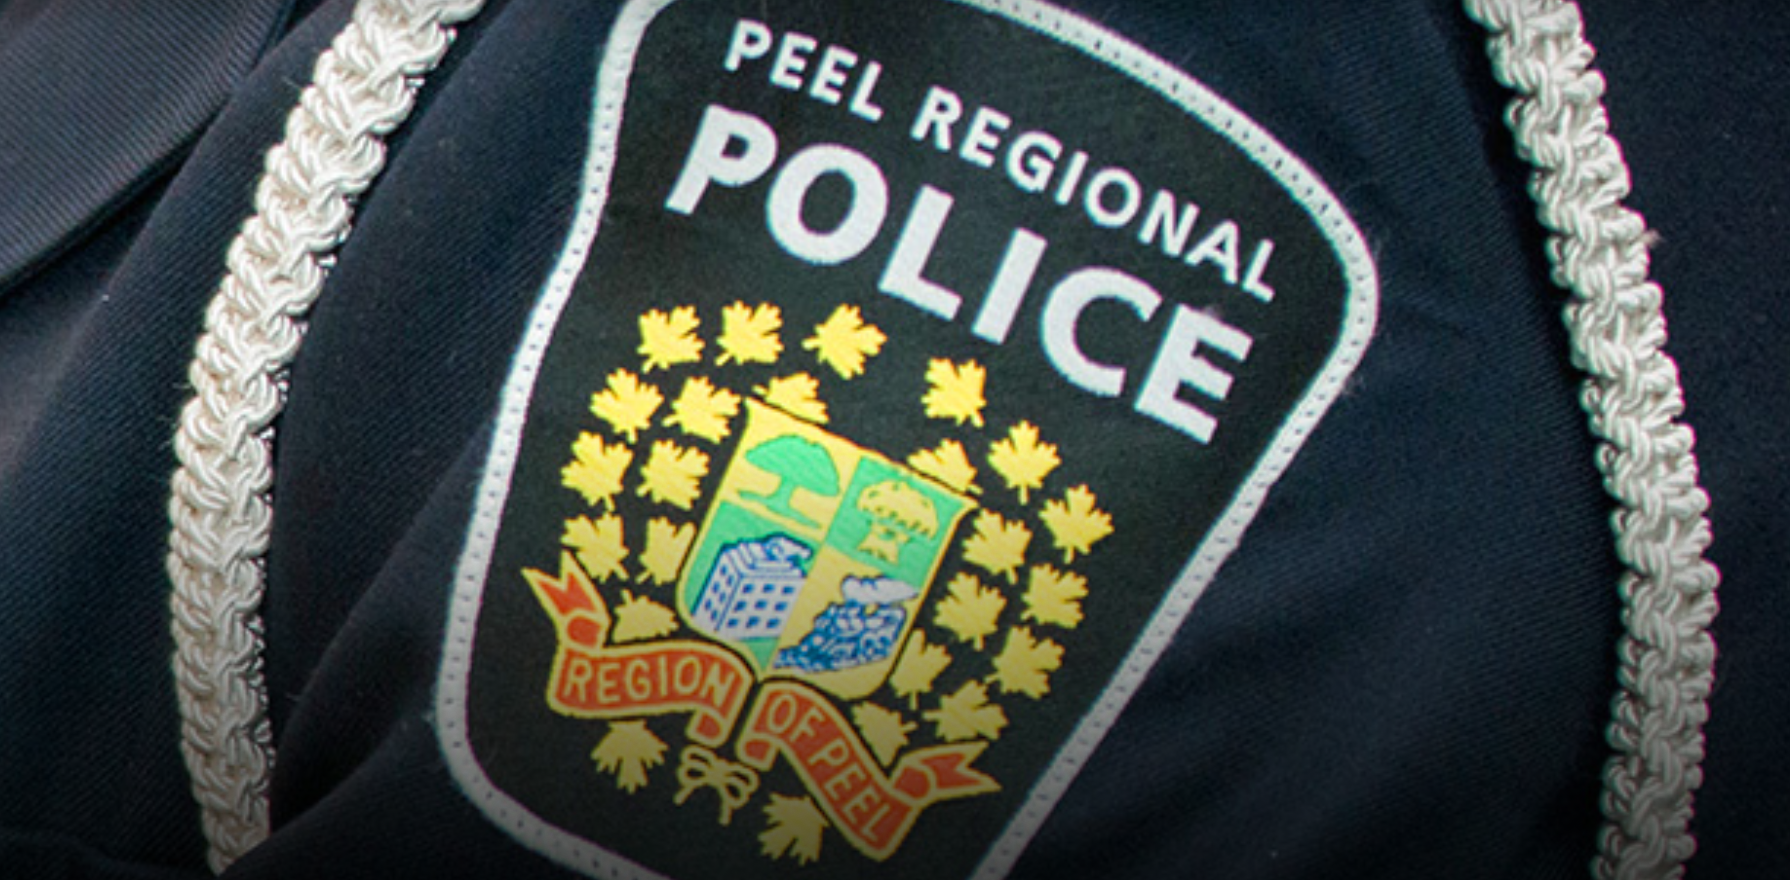 Duraiappah | Peel Regional Police